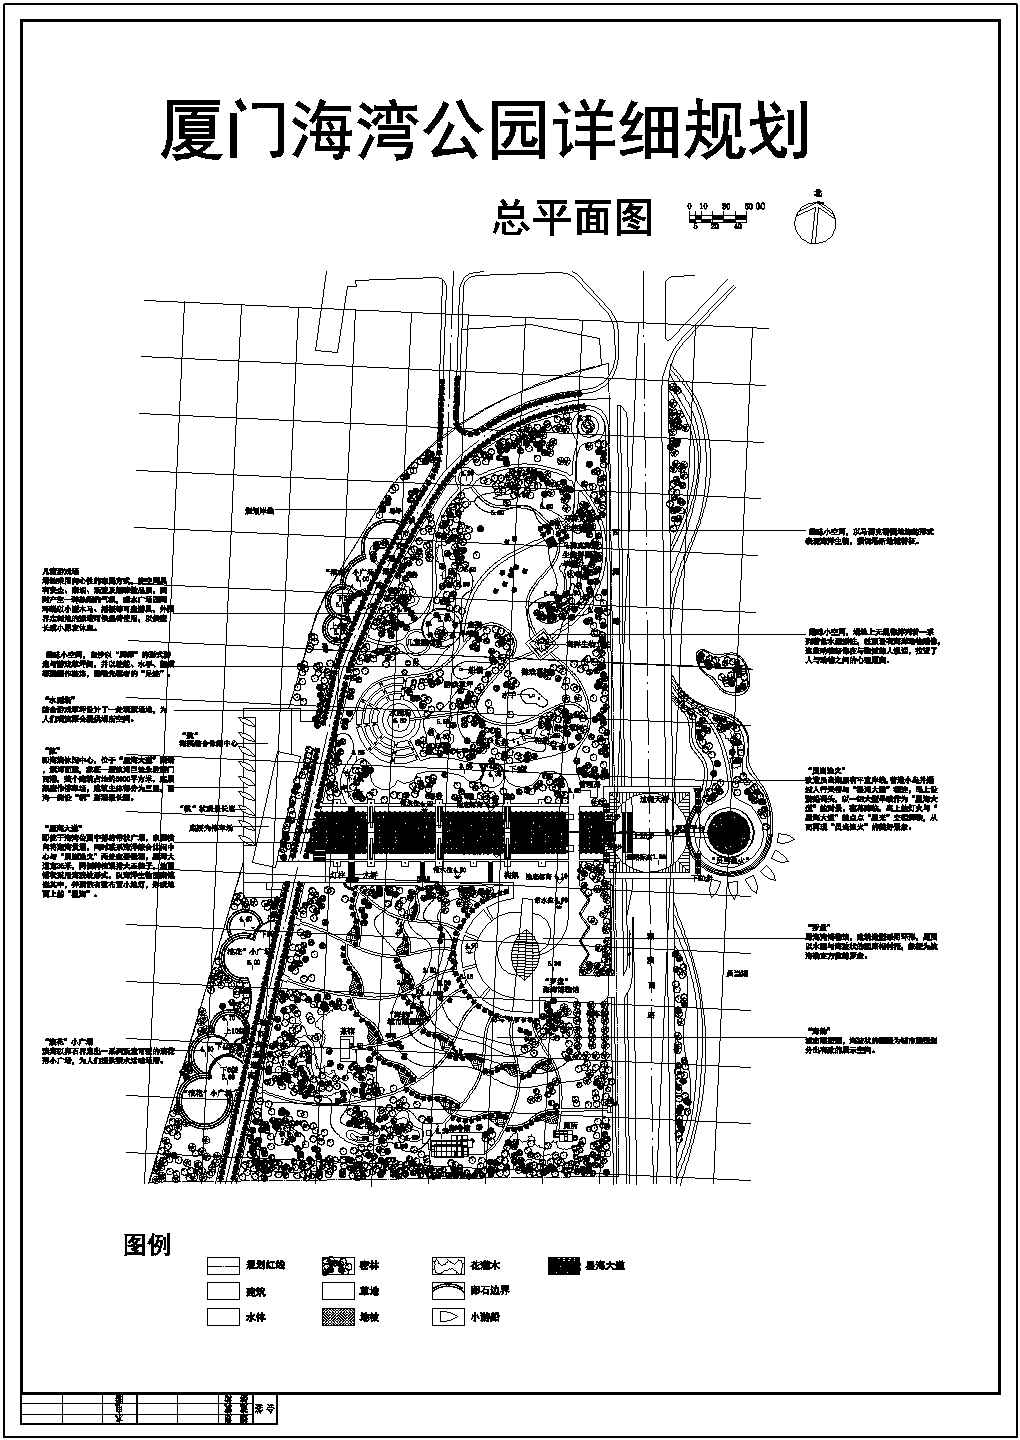 【厦门】某地海洋公园规划设计图纸（共一张）